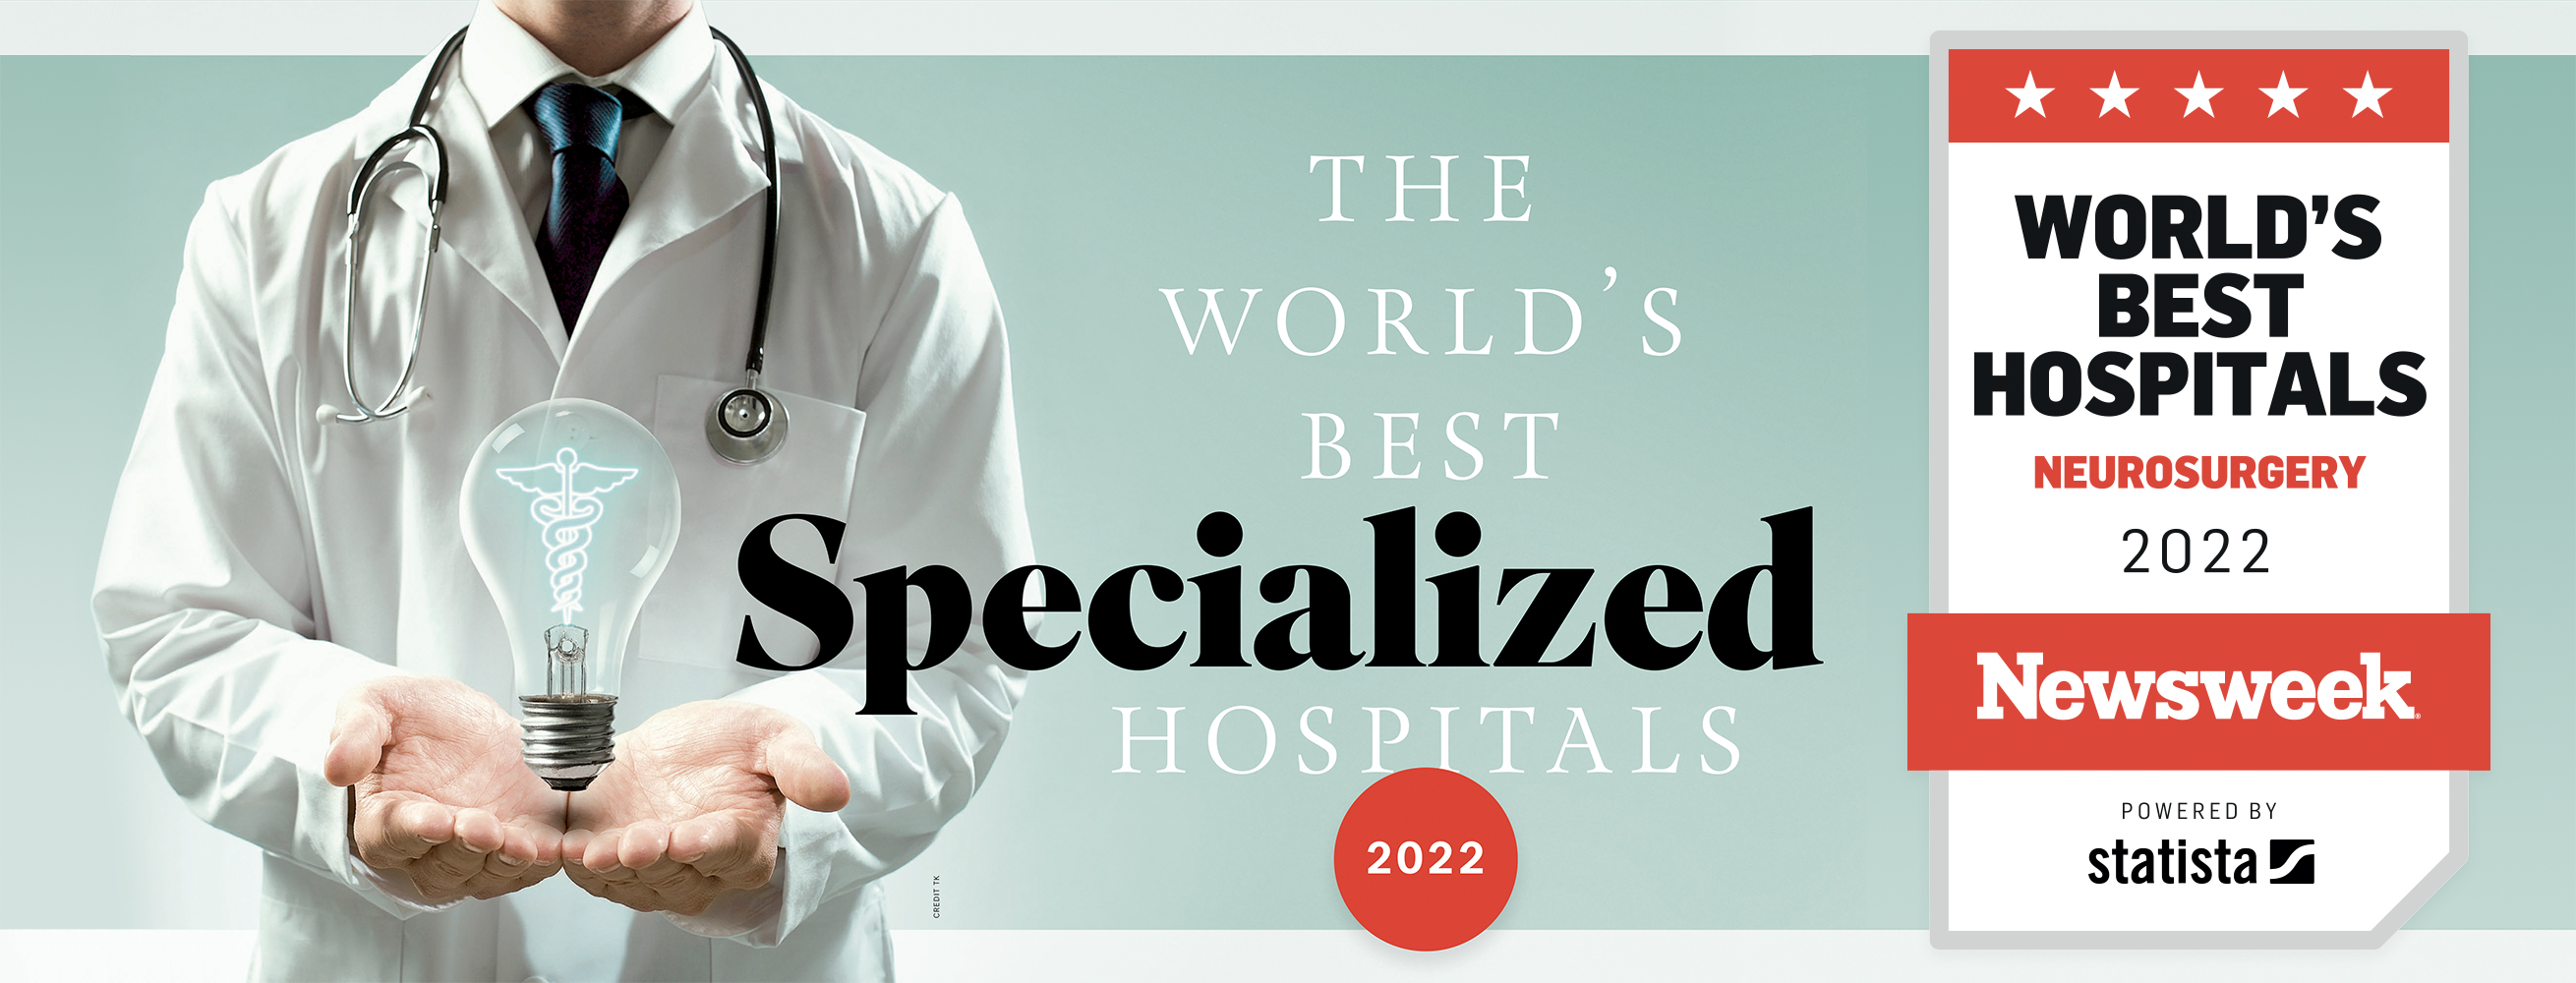 La Revista Newsweek nombra a Sheba como el "mejor hospital